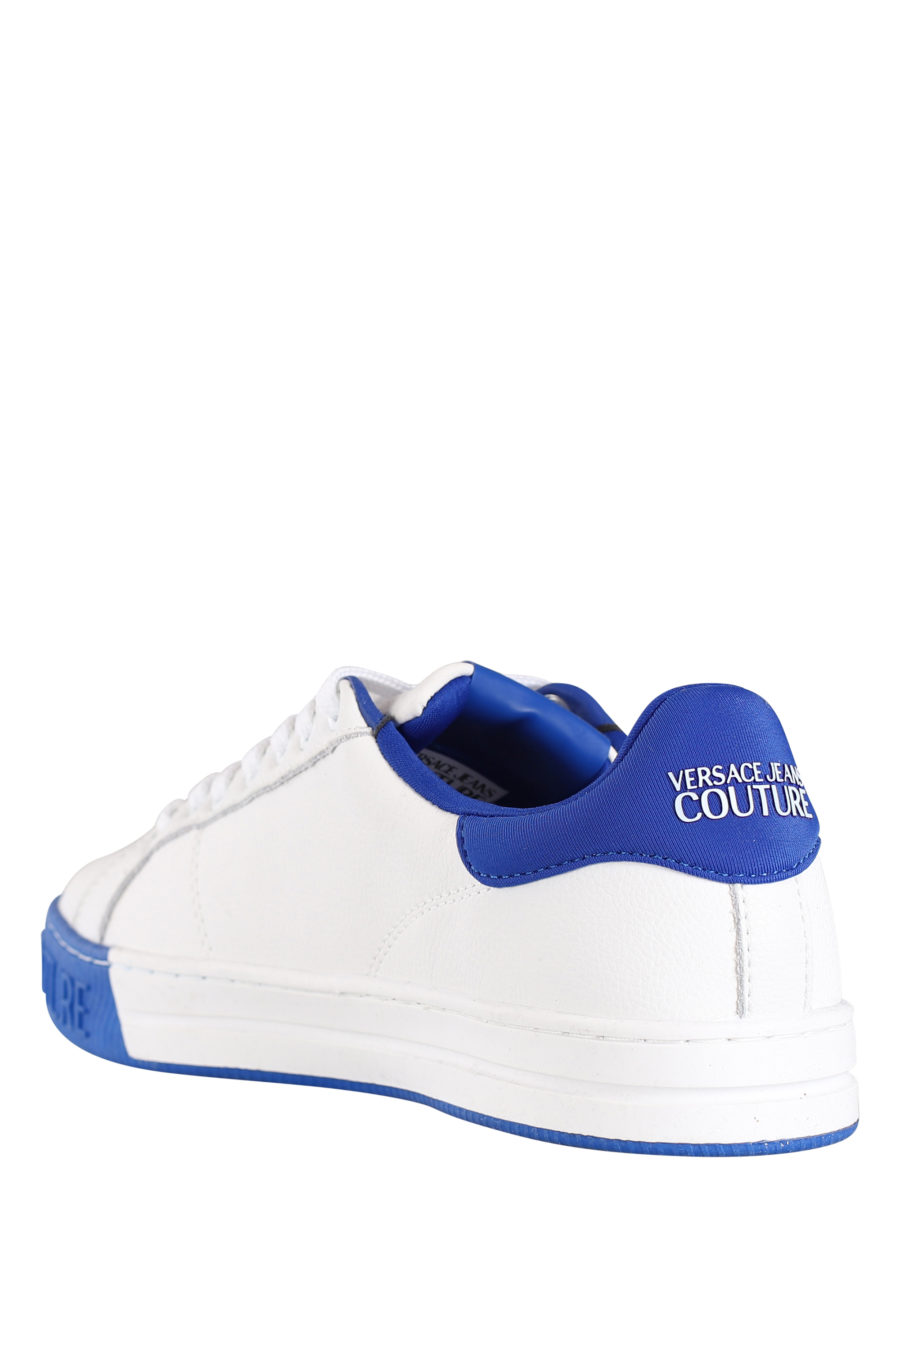 Zapatillas blancas con detalles azul - IMG 9802